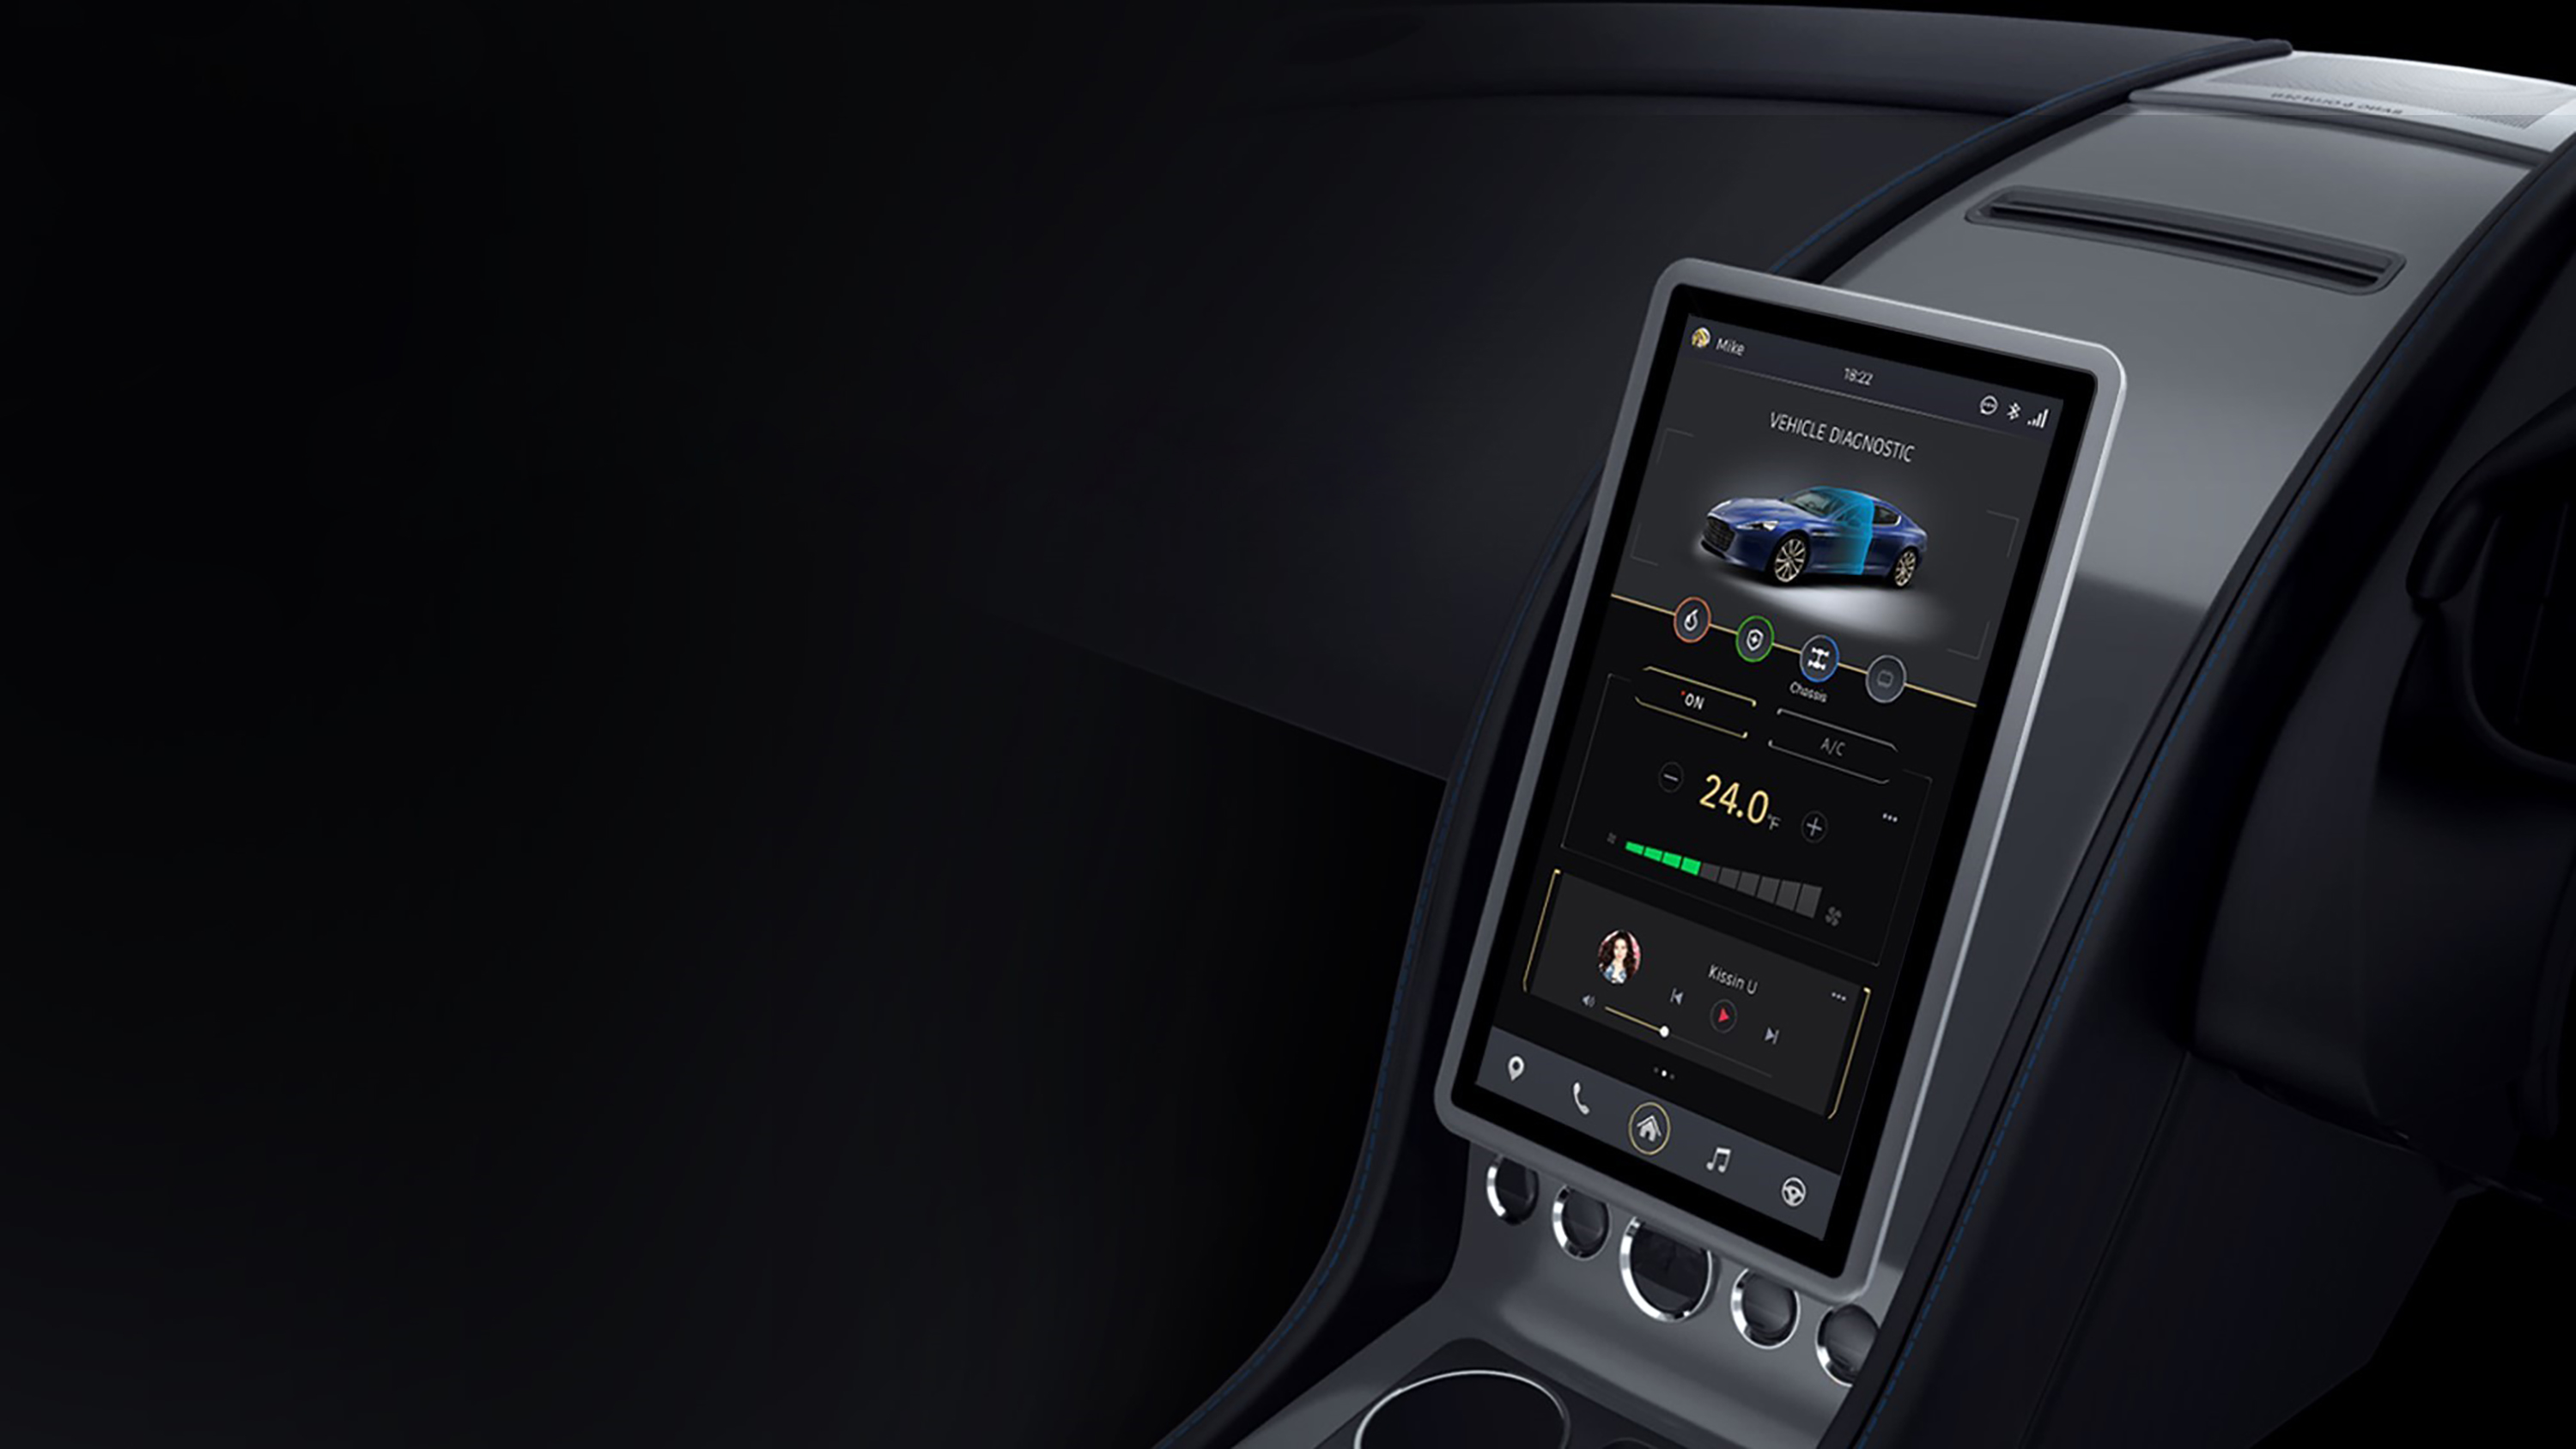 Aston Martin RapidE concept interior and touchscreen at CES 2016